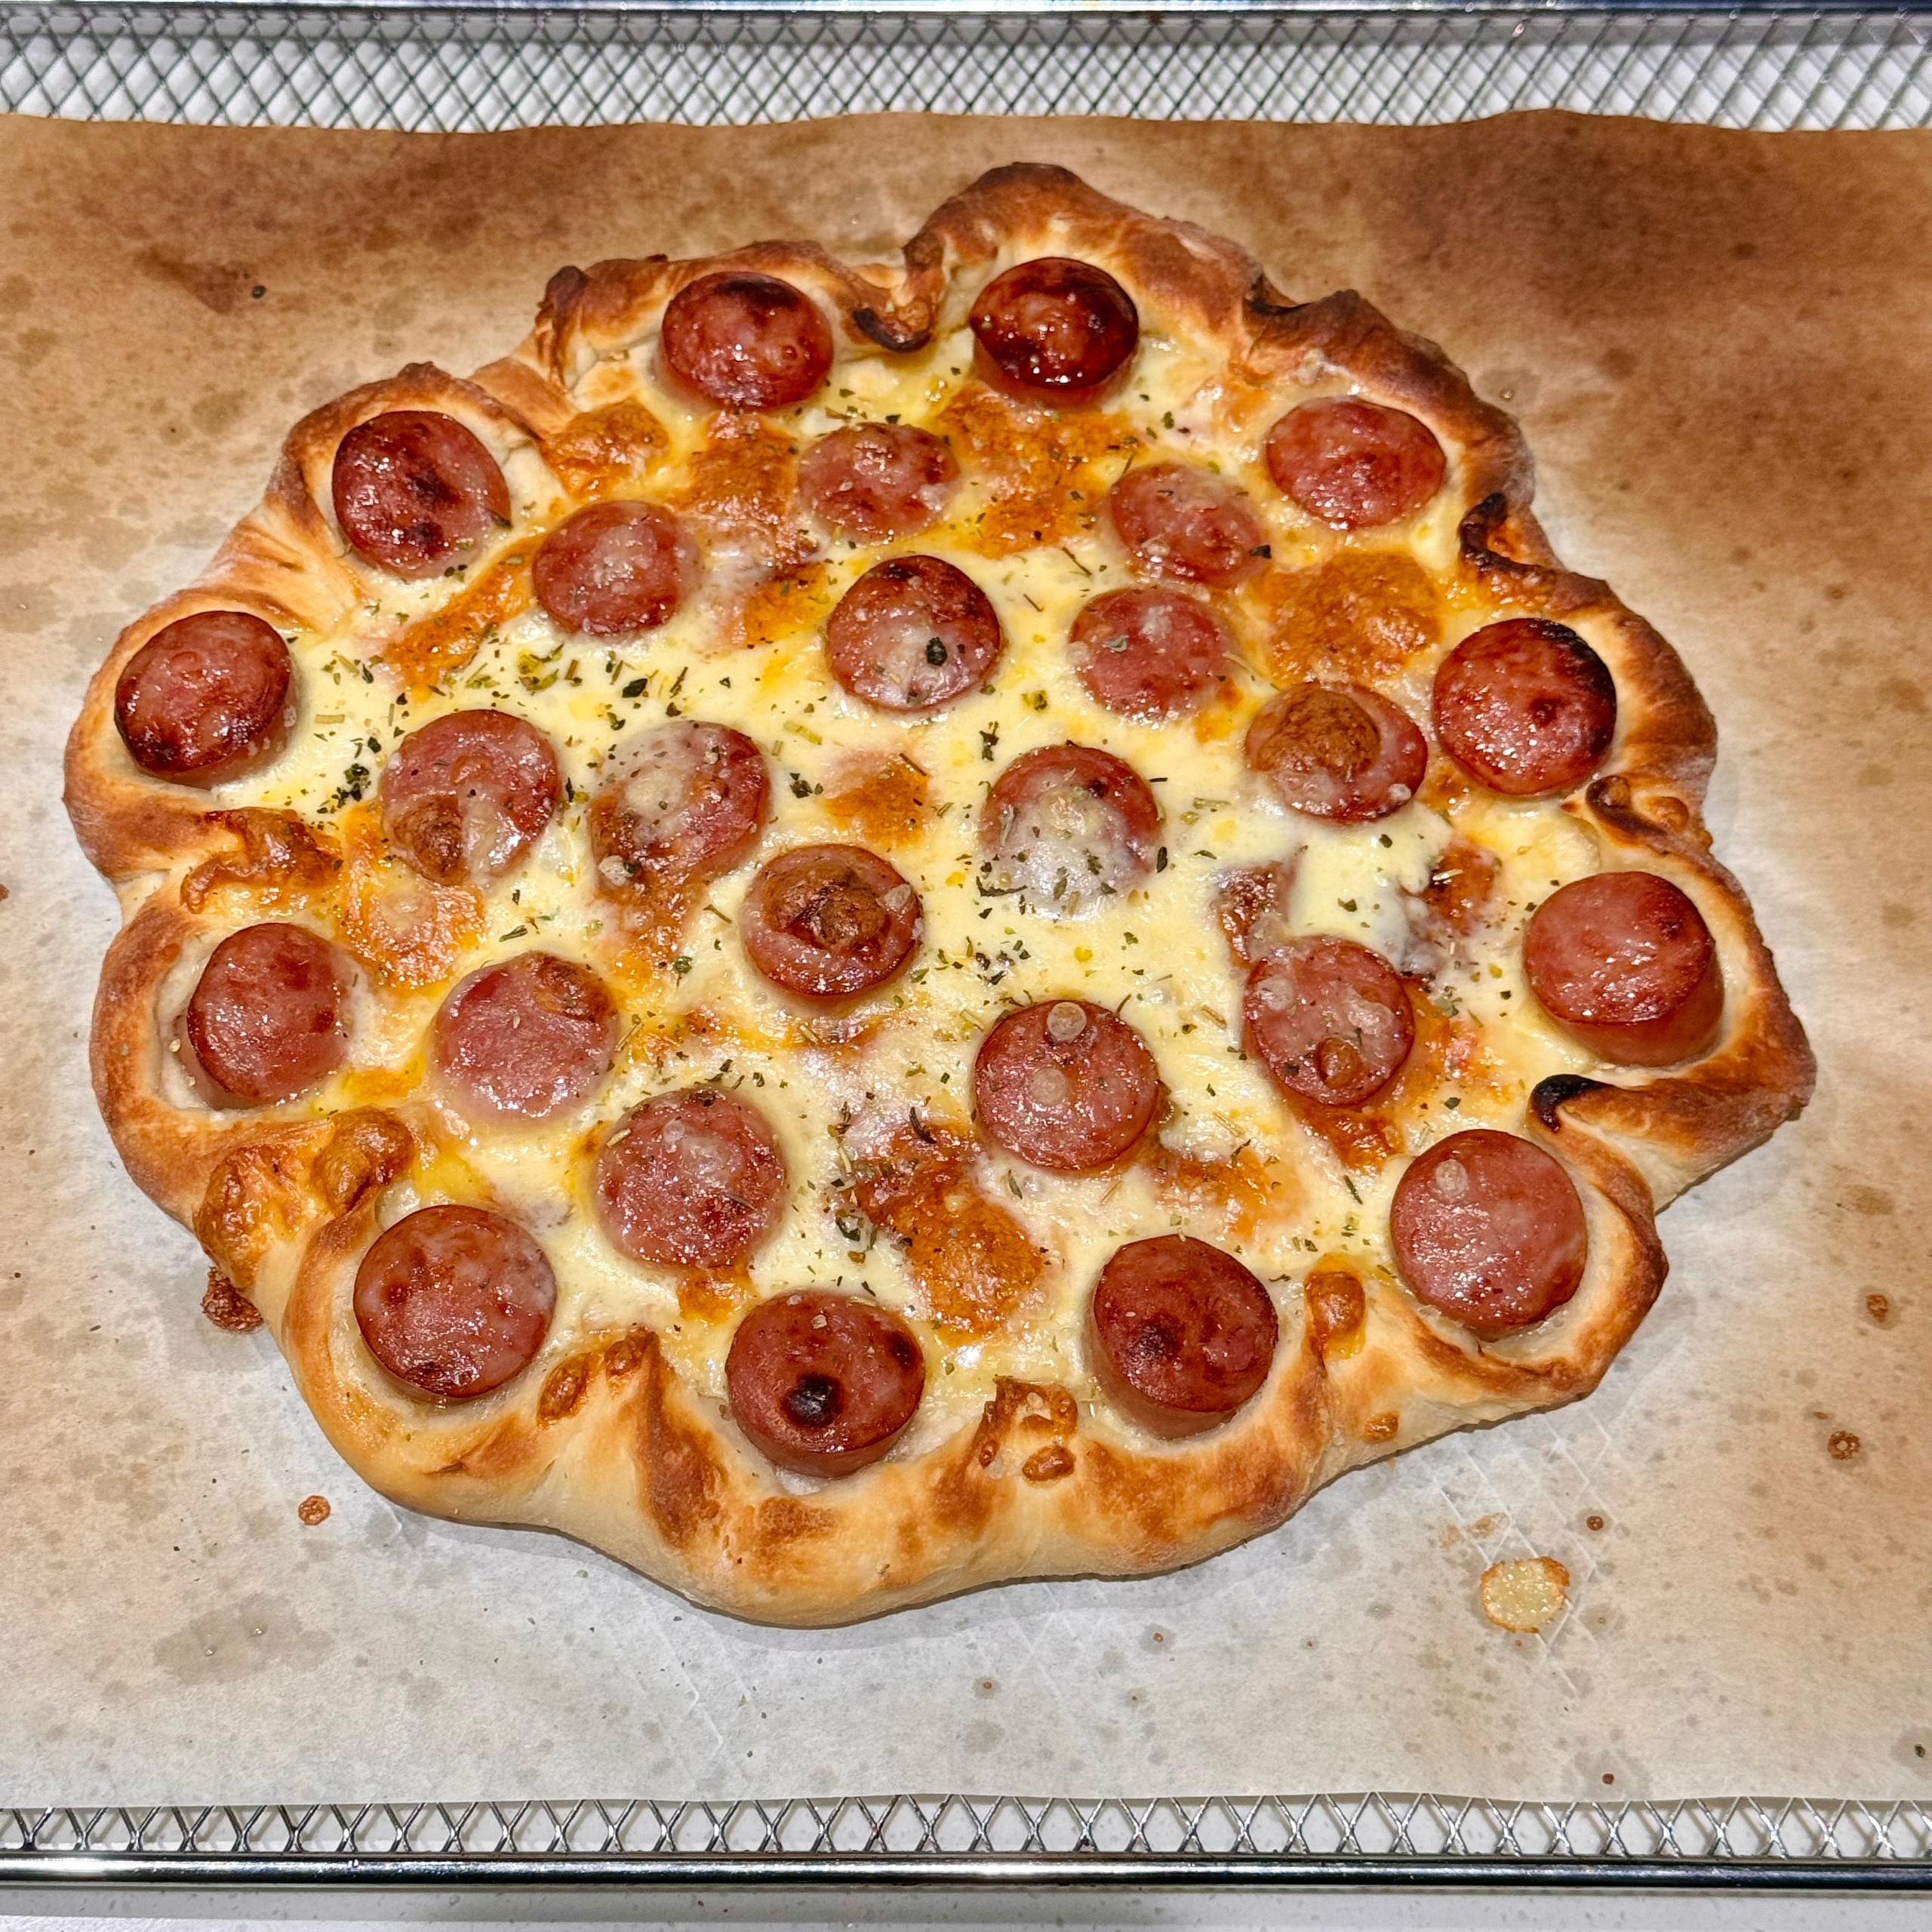 在家也能轻松做出米其林口感的肉肠卷边披萨